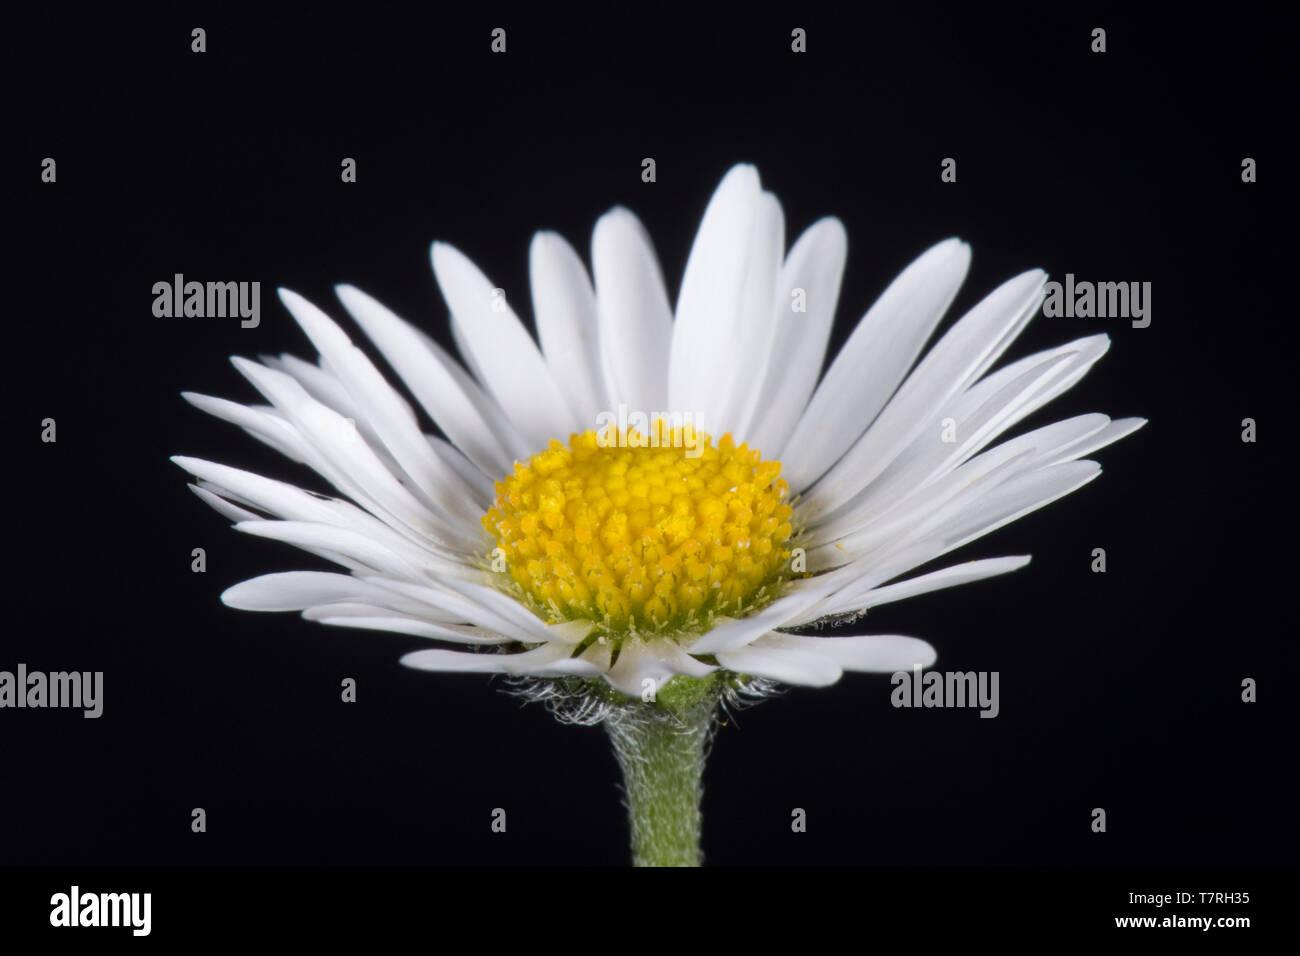 Ray blanc et jaune fleurs du disque (fleurs) d'une marguerite (Bellis perennis) une structure typique de fleurs composites (Asteraceae) Banque D'Images